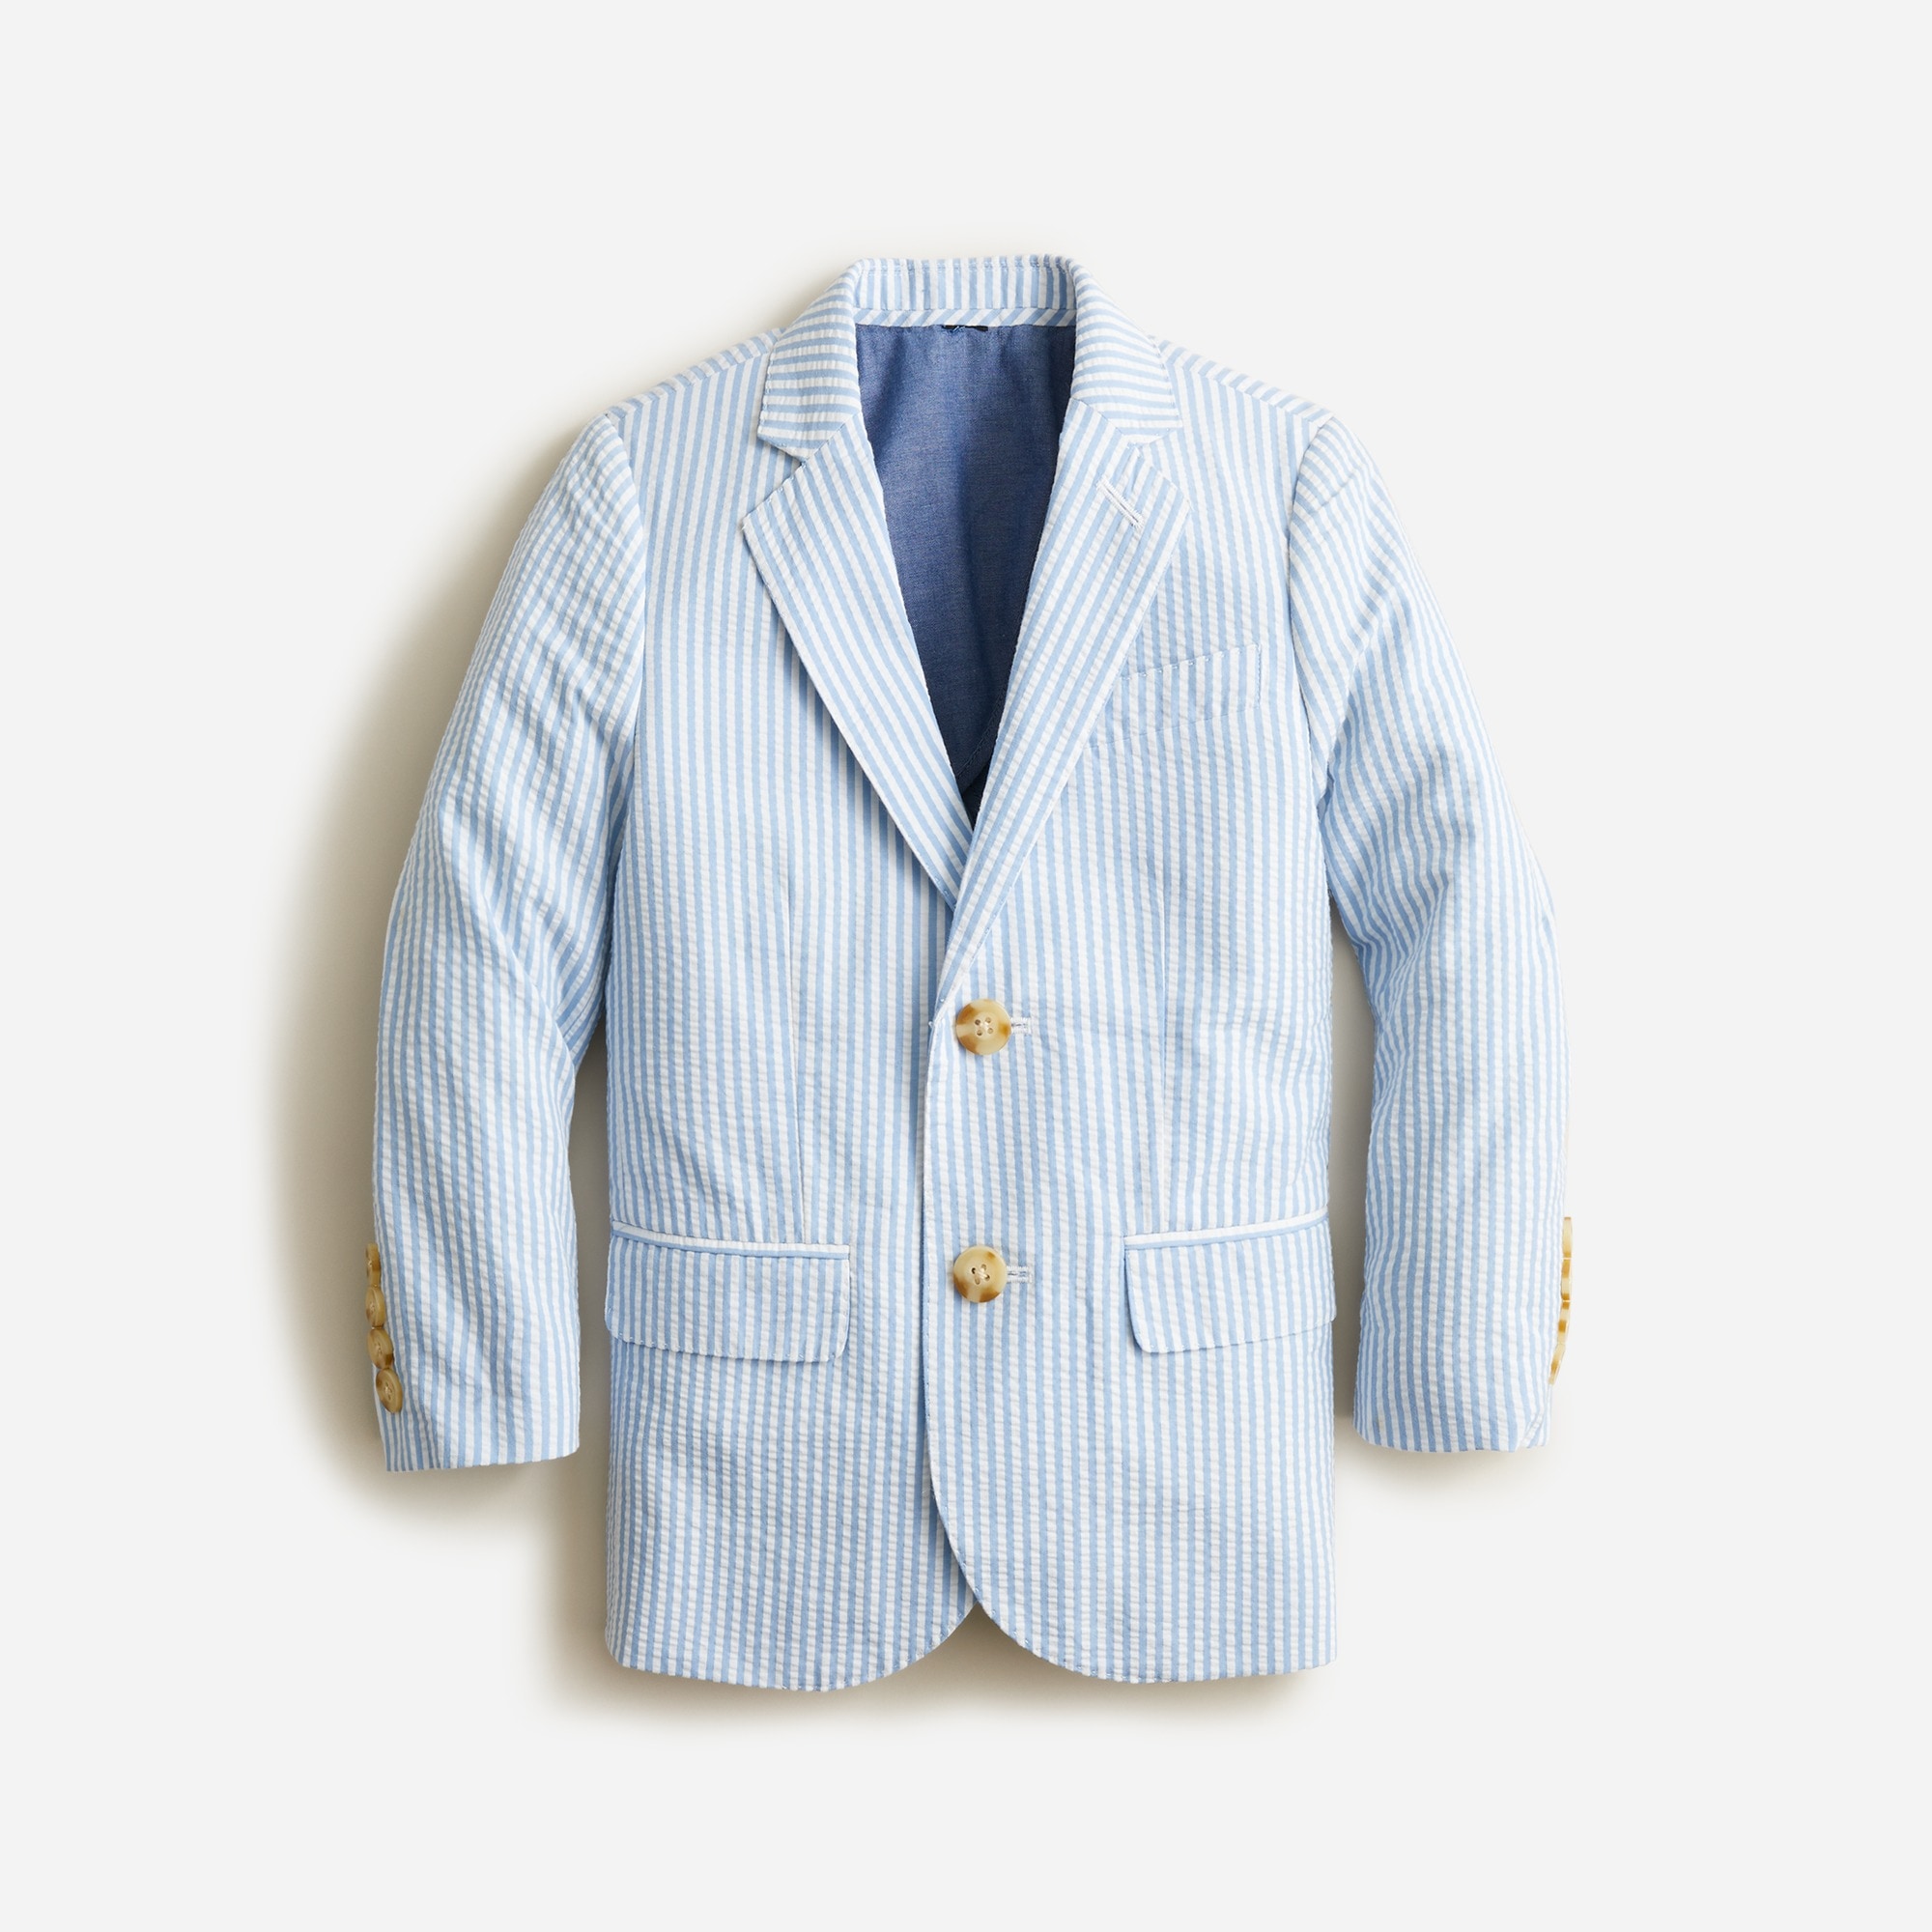  Boys&apos; Ludlow suit jacket in seersucker